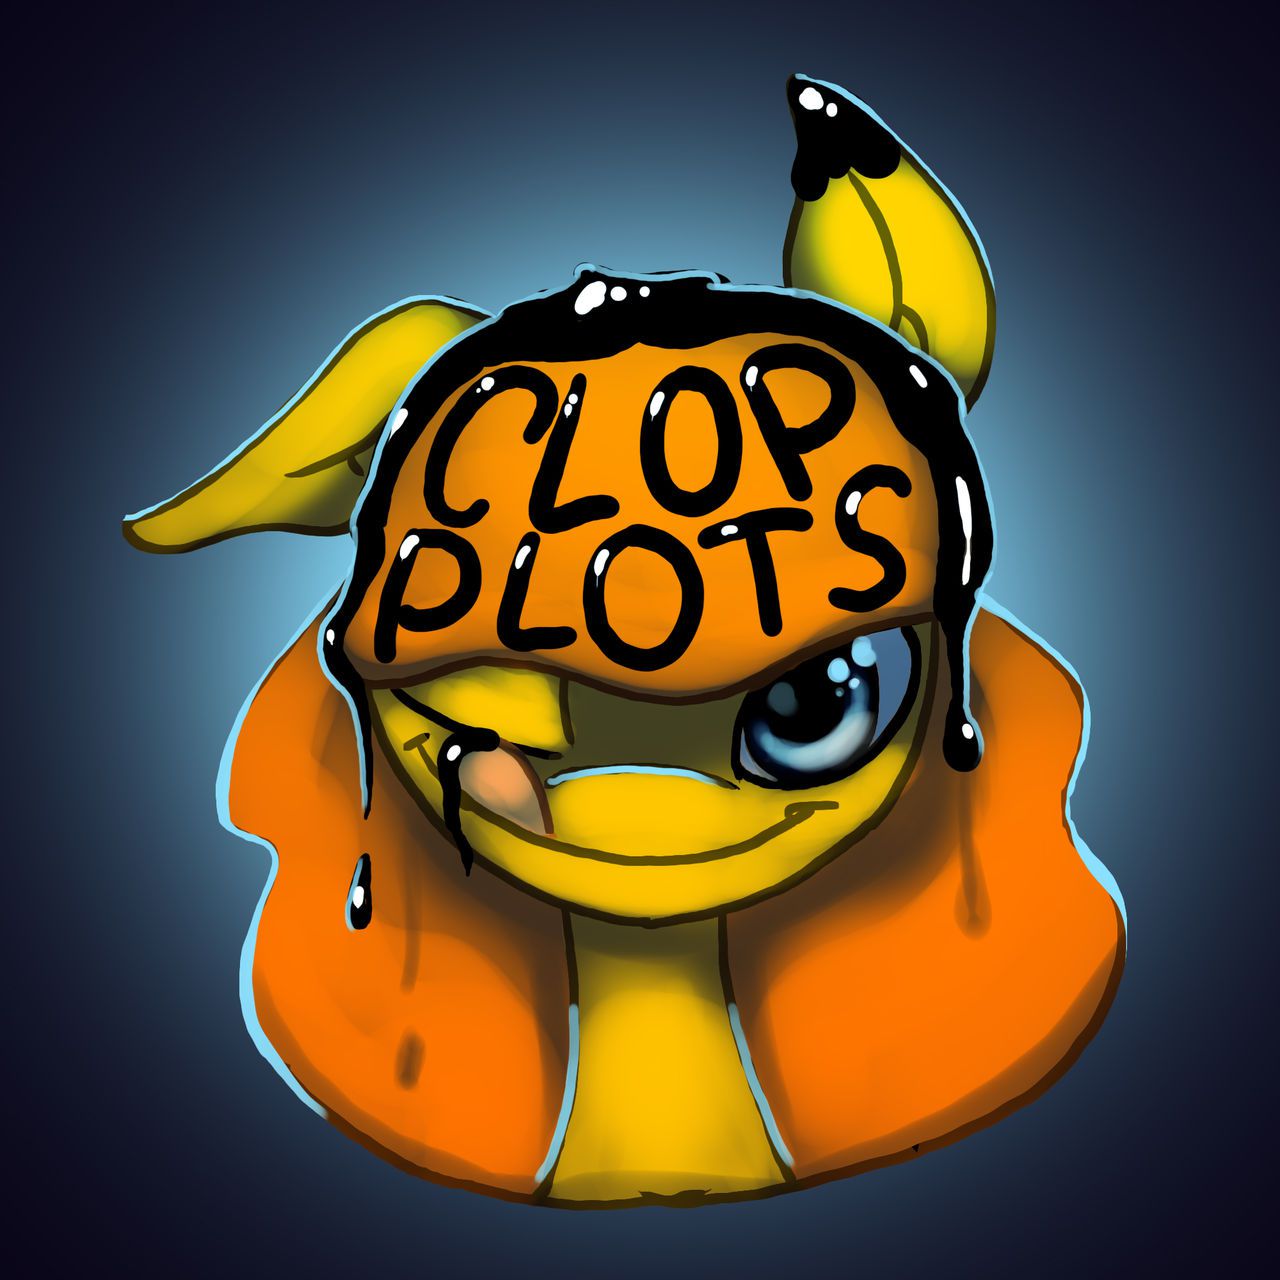 ARTIST ClopPlots 19